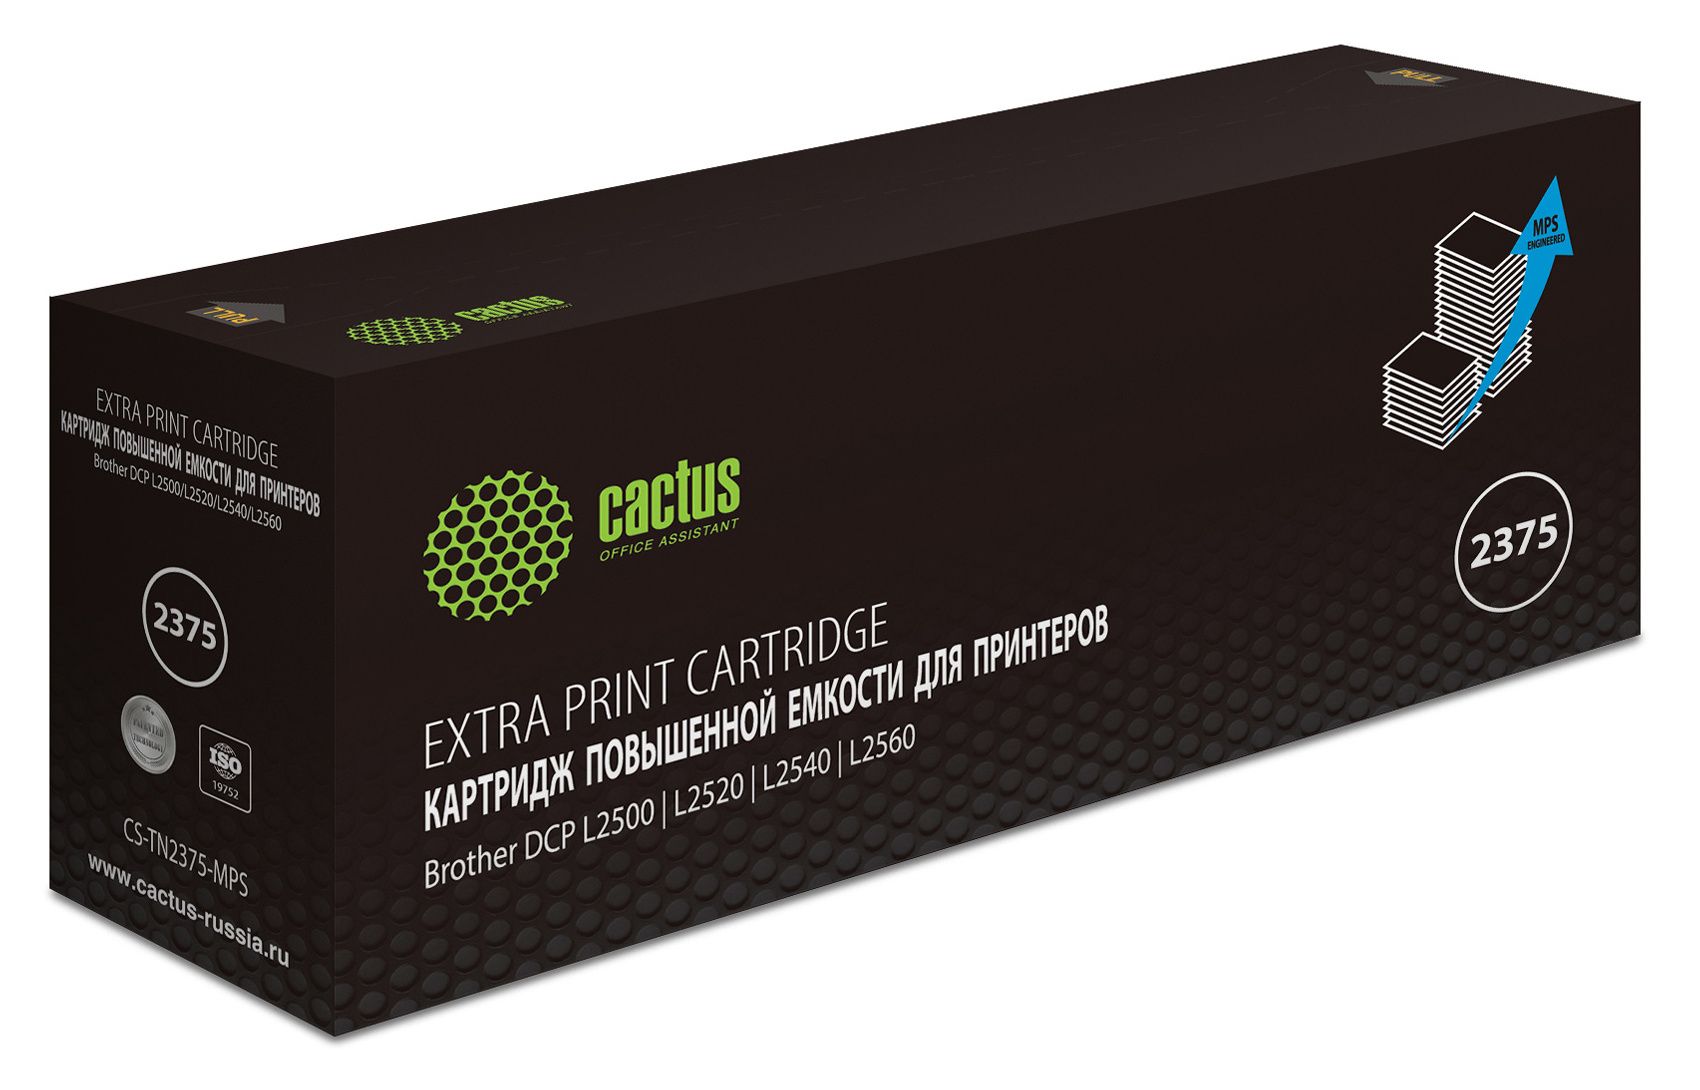 Картридж лазерный Cactus CS-TN2375-MPS черный (10400стр.) для Brother DCP L2500/L2520/L2540/L2560